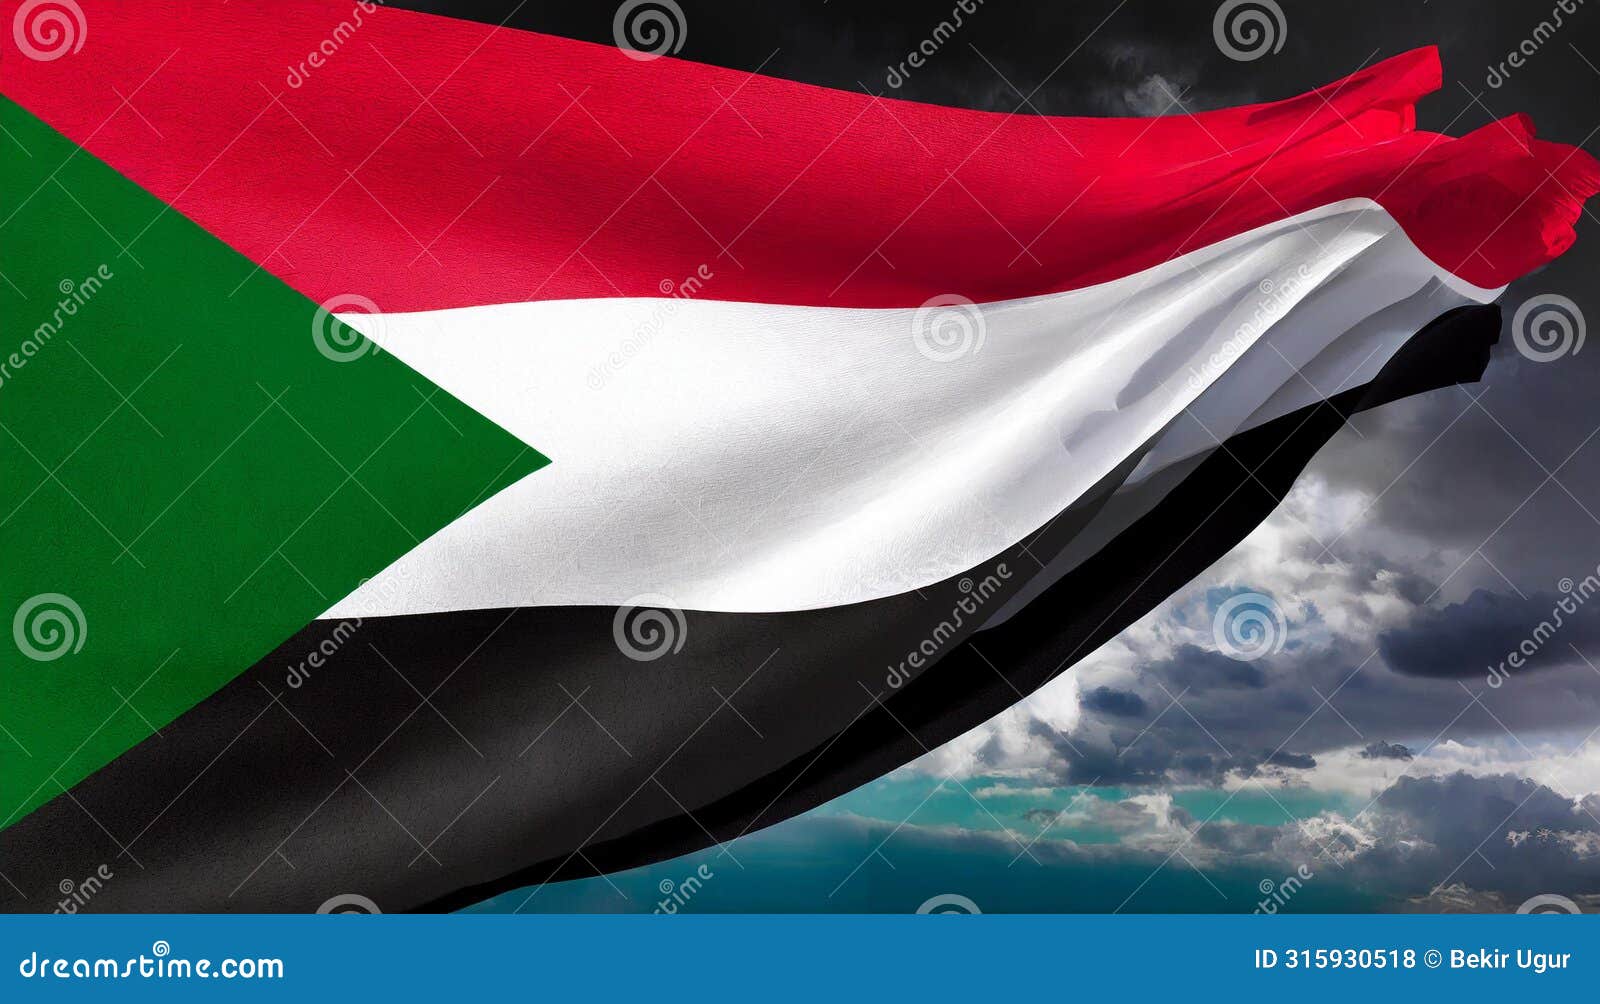 sudan flag. the national flag of sudan